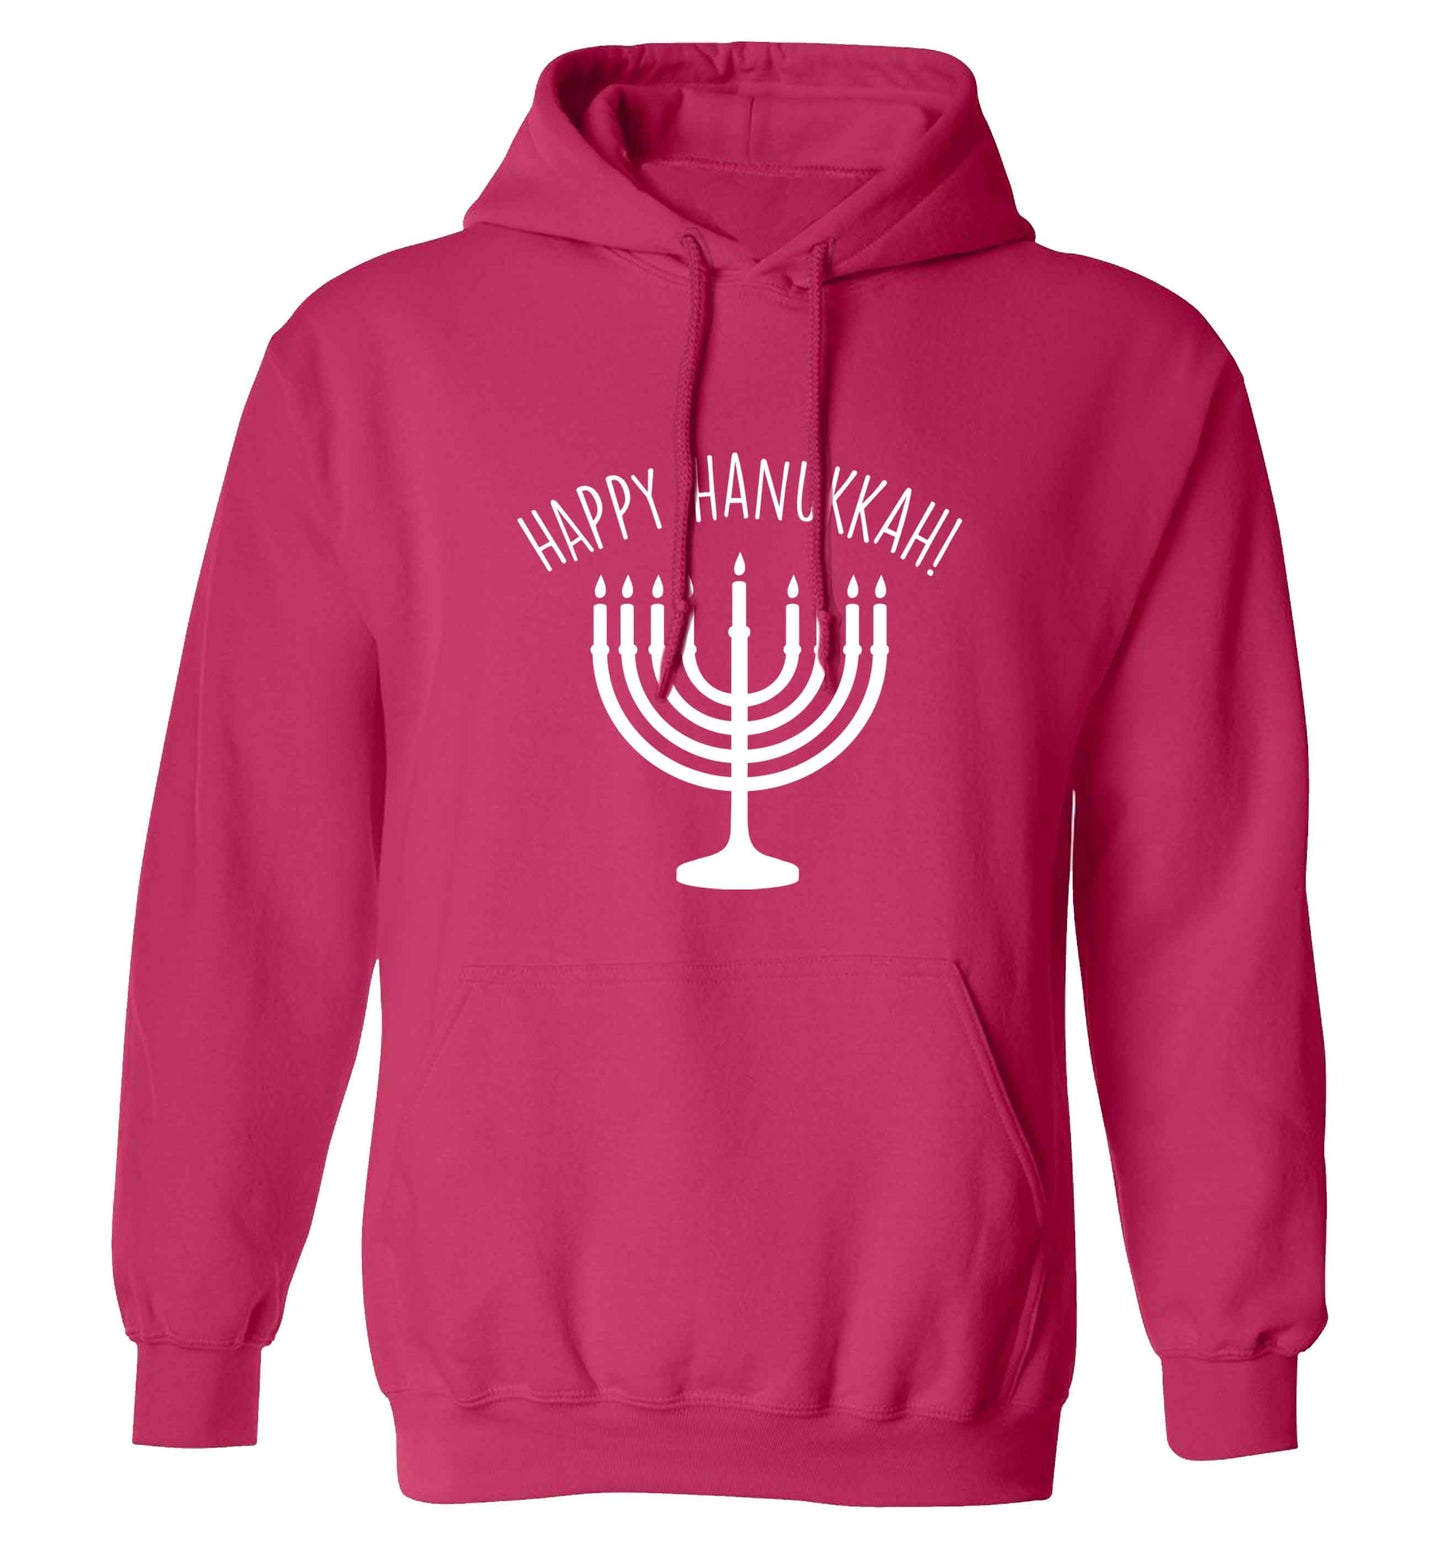 Happy hanukkah adults unisex pink hoodie 2XL